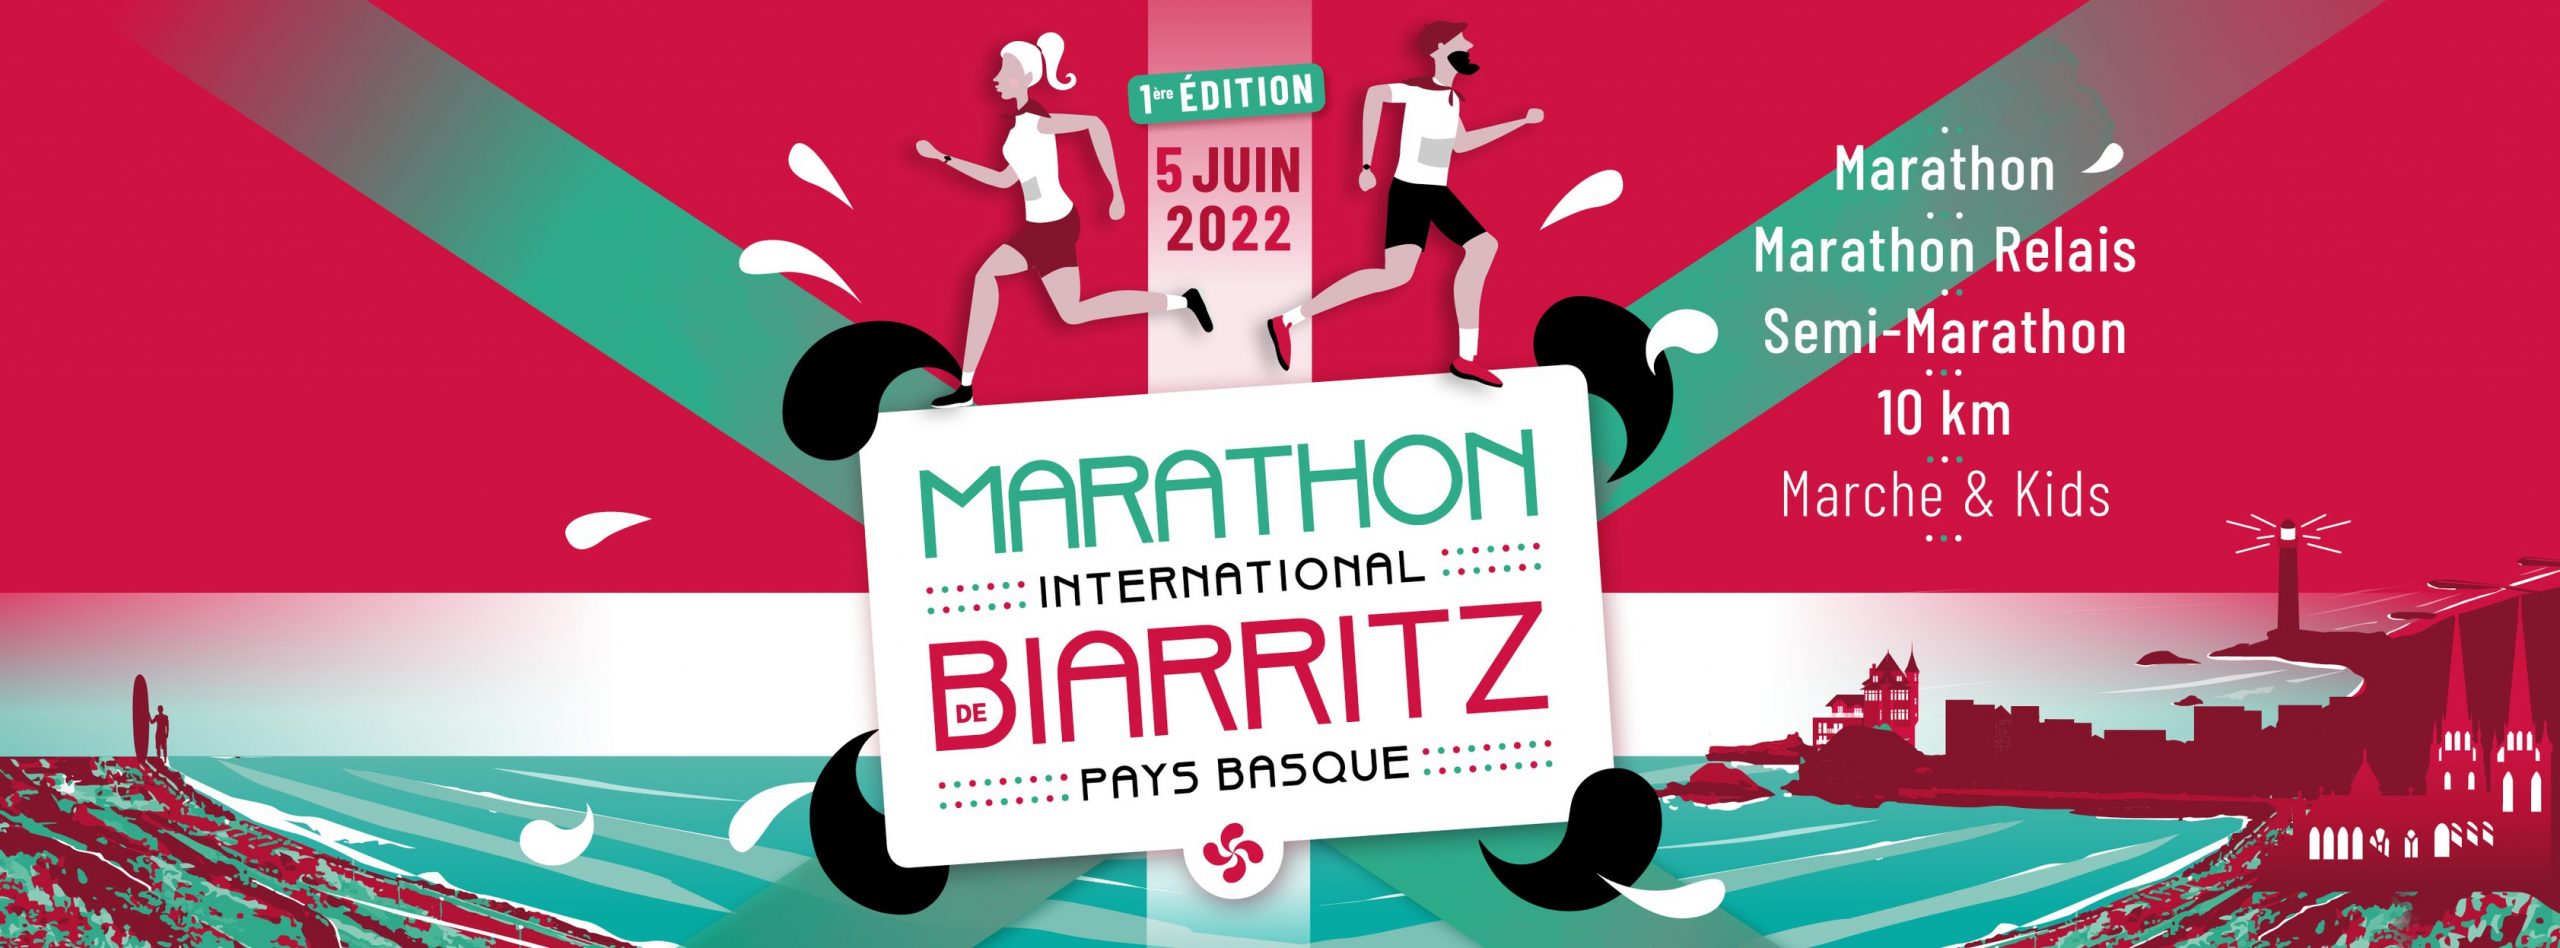 Marathon de Biarritz, 5 juin 2022